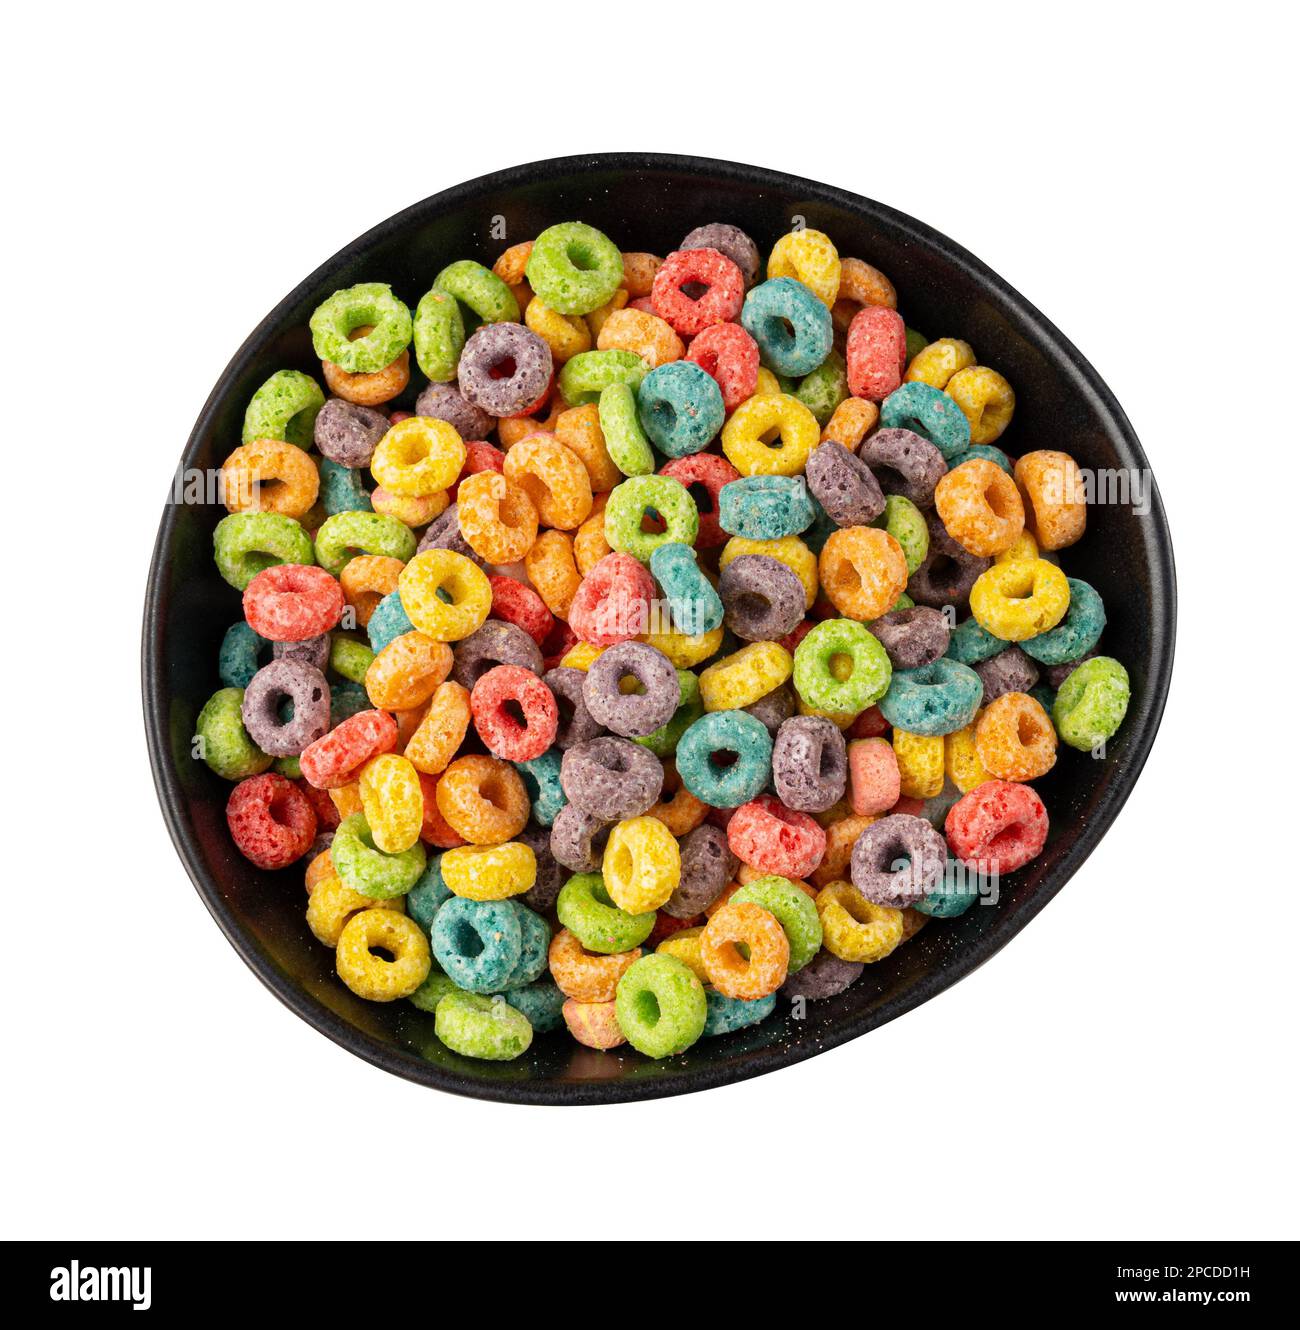 Bunte Frühstücksringe in der isolierten Schüssel. Fruit Loops, fruchtige Cerealien-Ringe, farbenfrohe Corn Cerealien auf weißem Hintergrund, Draufsicht Stockfoto